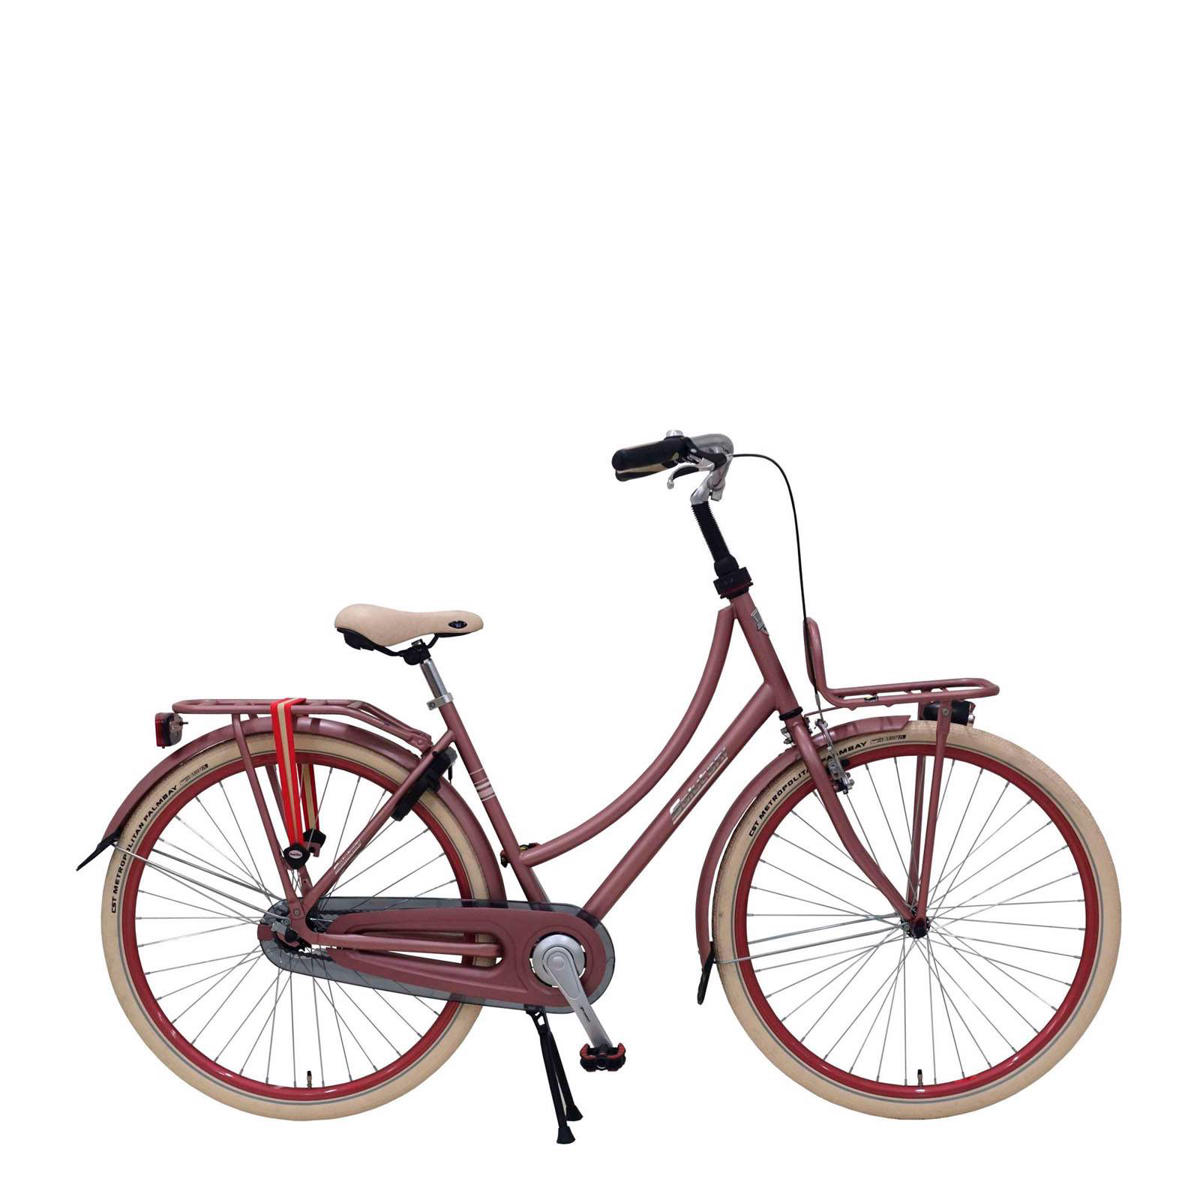 Dakloos ga winkelen vacuüm Salutoni Excellent 28 inch fiets | wehkamp